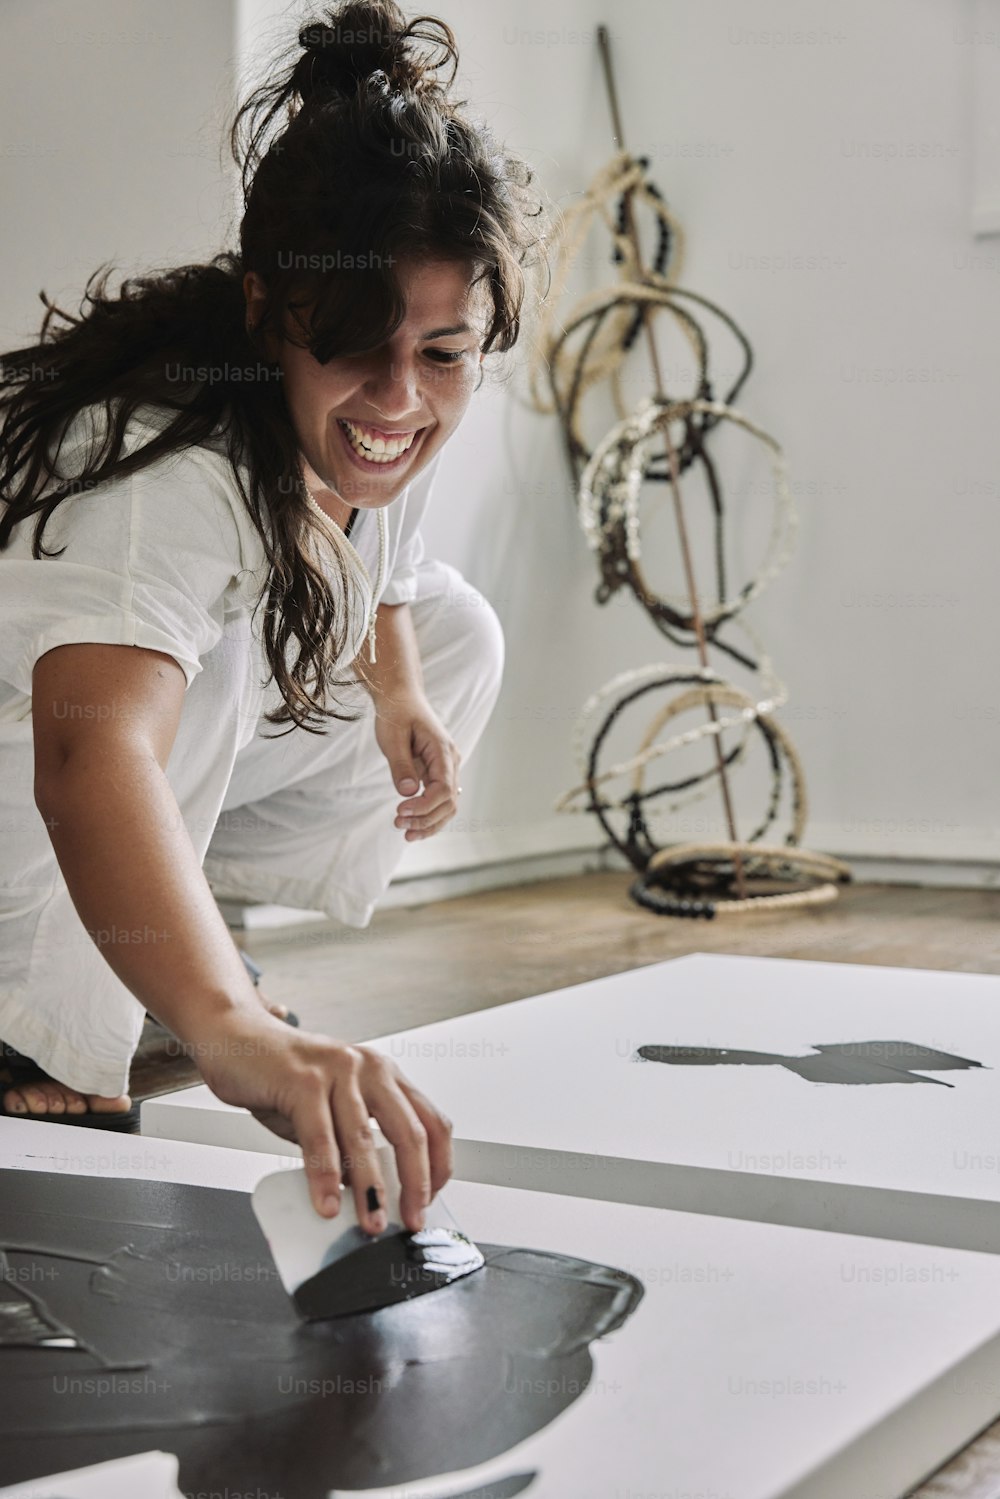 Una mujer sonríe mientras trabaja en una obra de arte